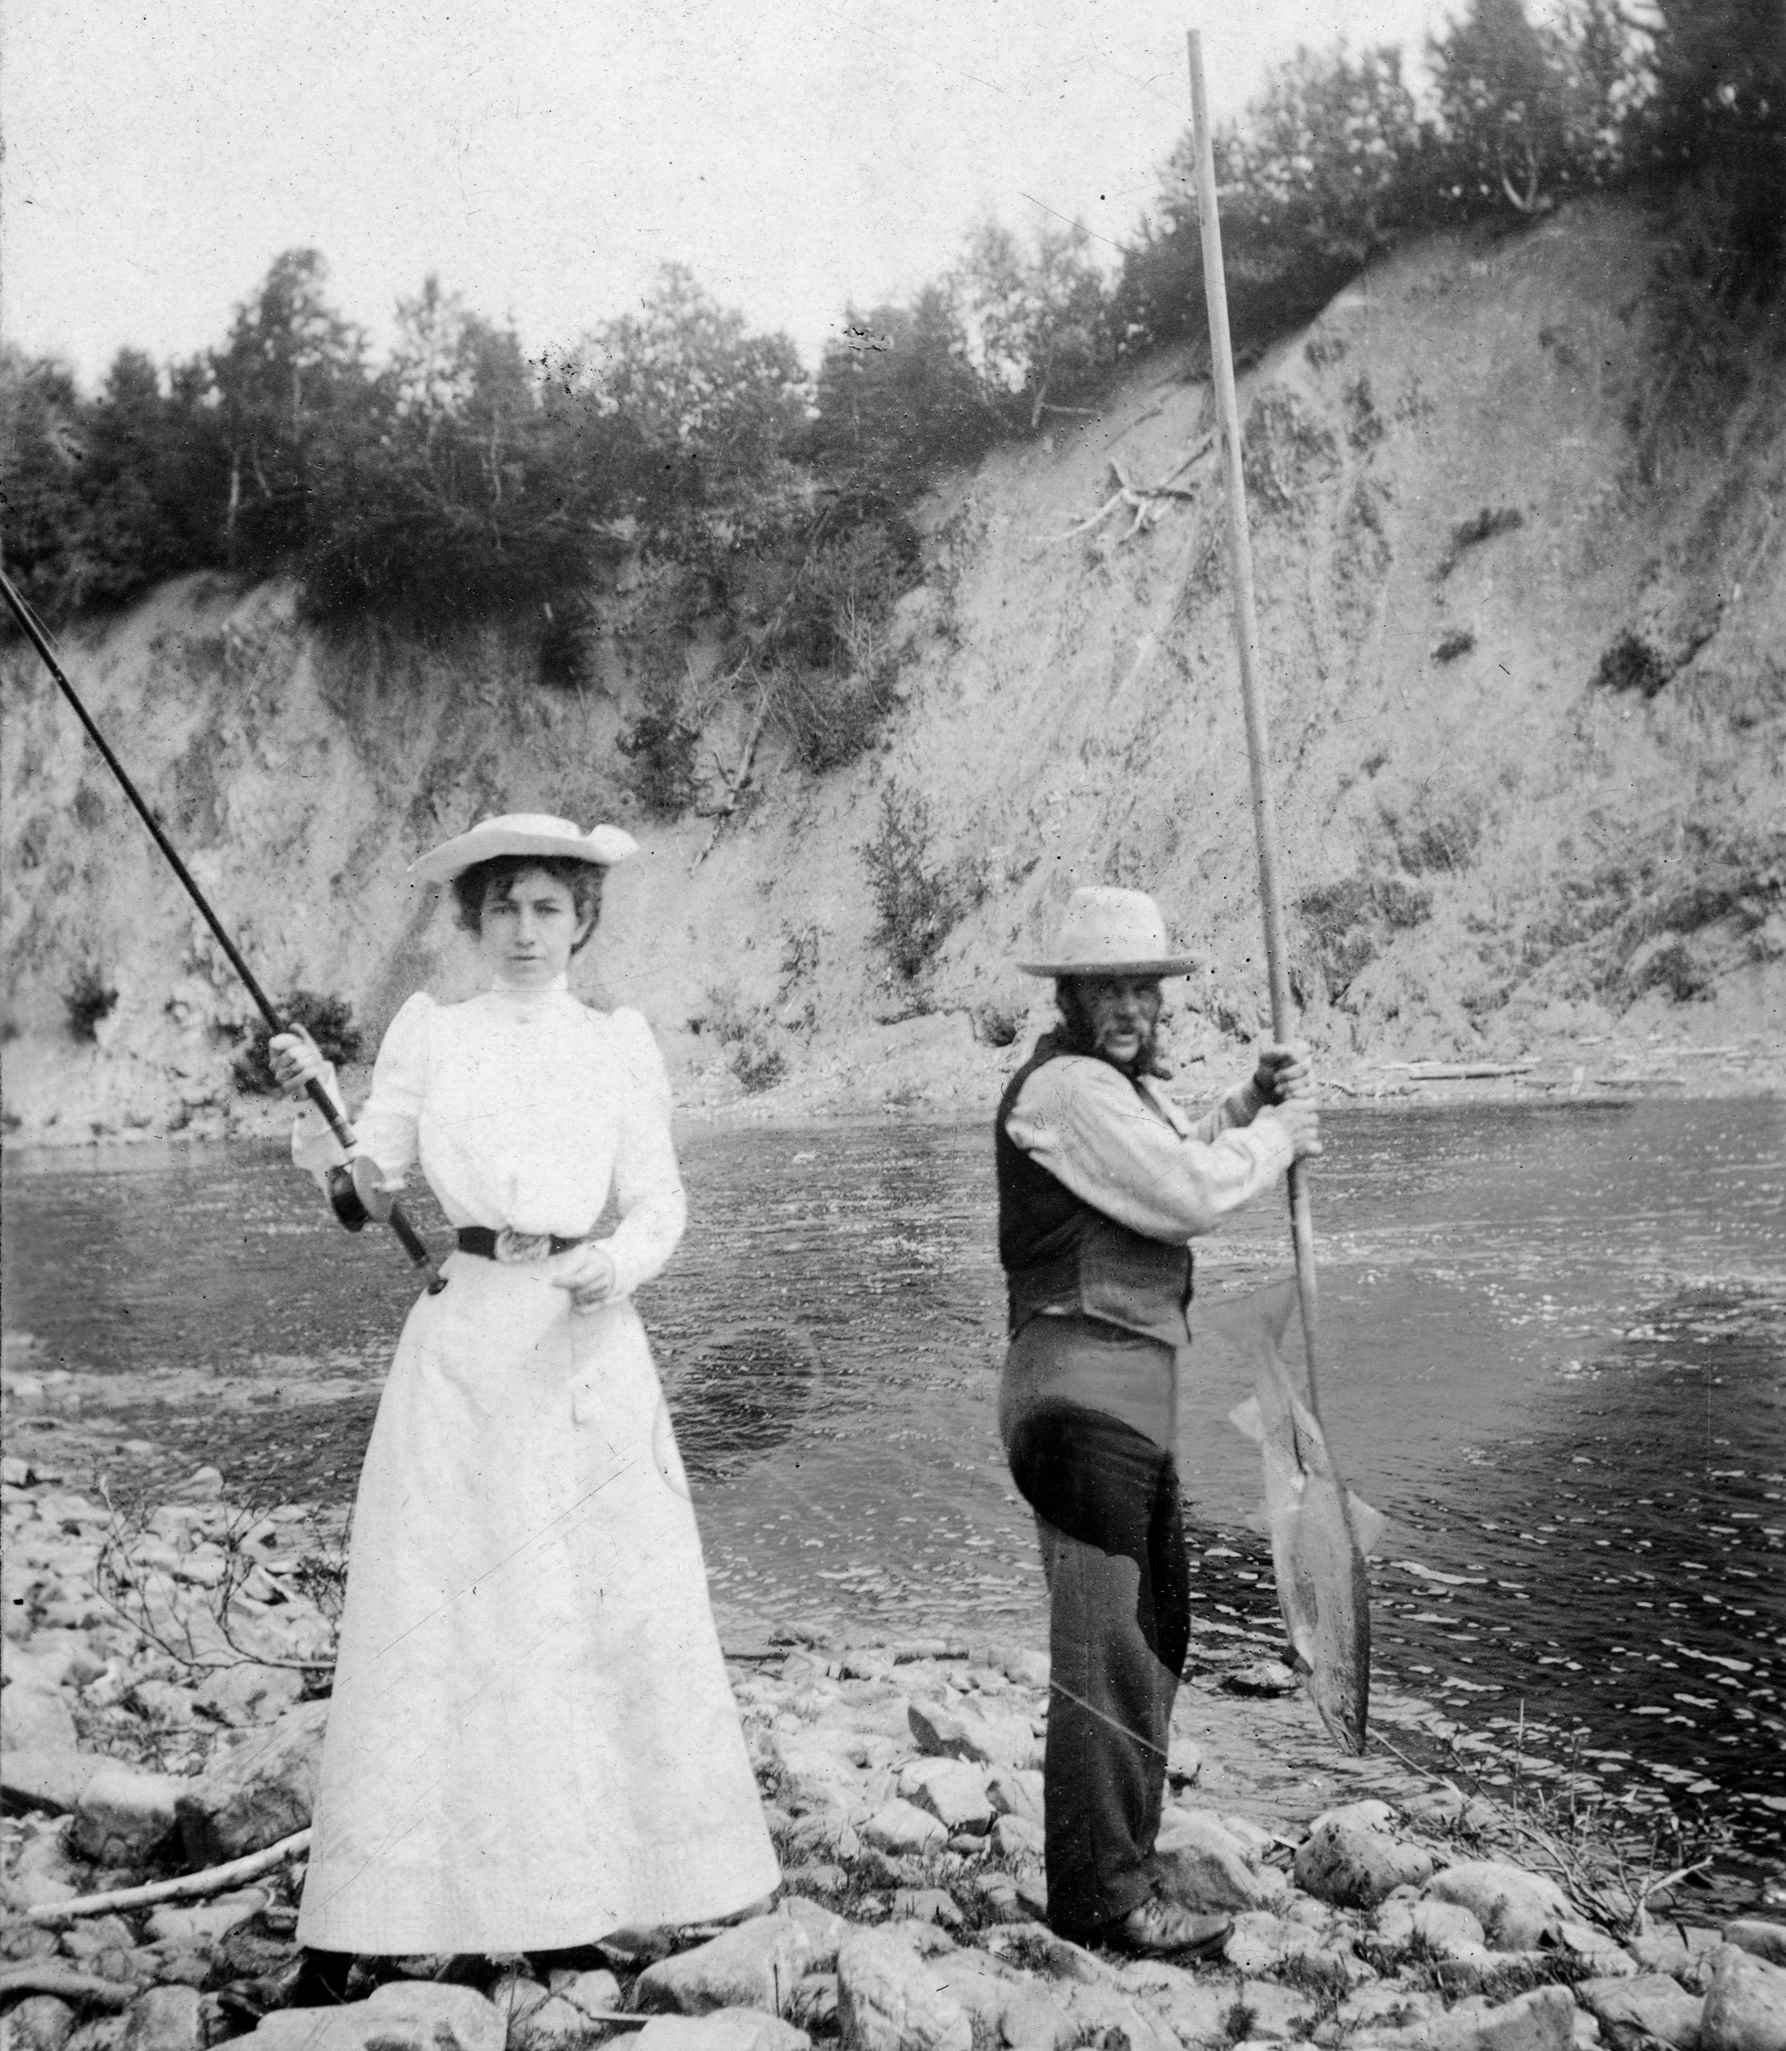 Une femme à la taille très fine tient une canne à pêche, à côté d’un guide qui tient un filet de pêche.